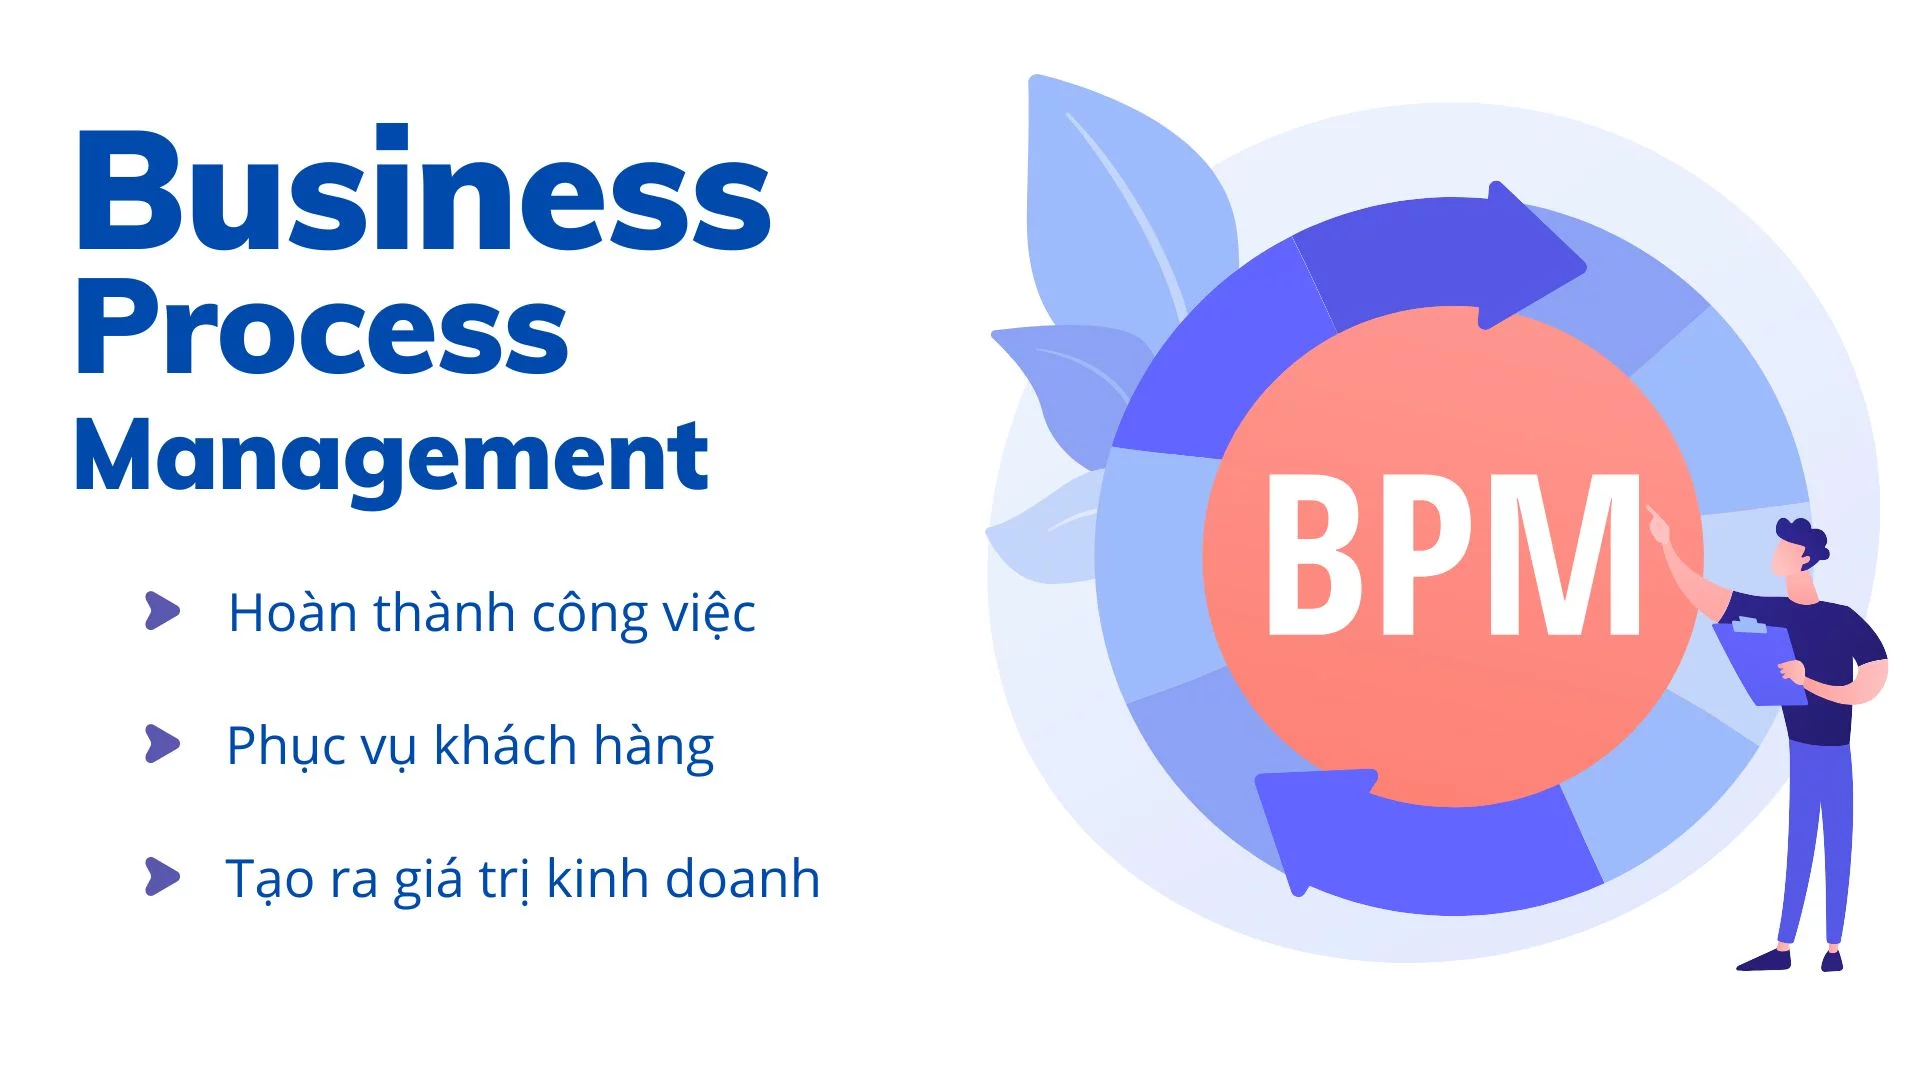 BPM cần được xây dựng toàn diện để  tạo giá trị chô khách hàng và doanh nghiệp